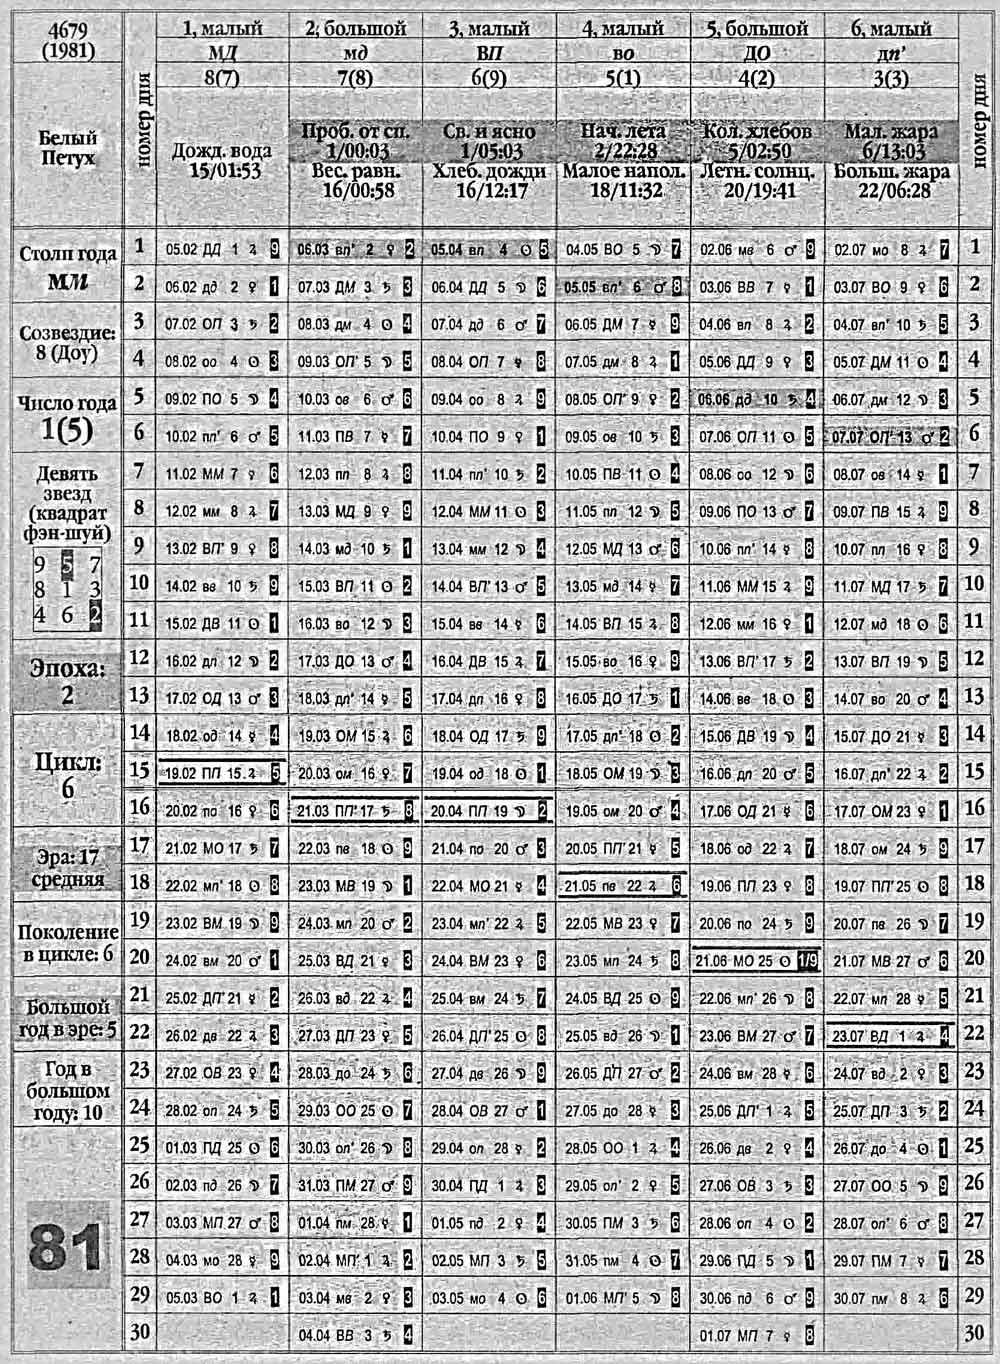 Китайский календарь 1981 года